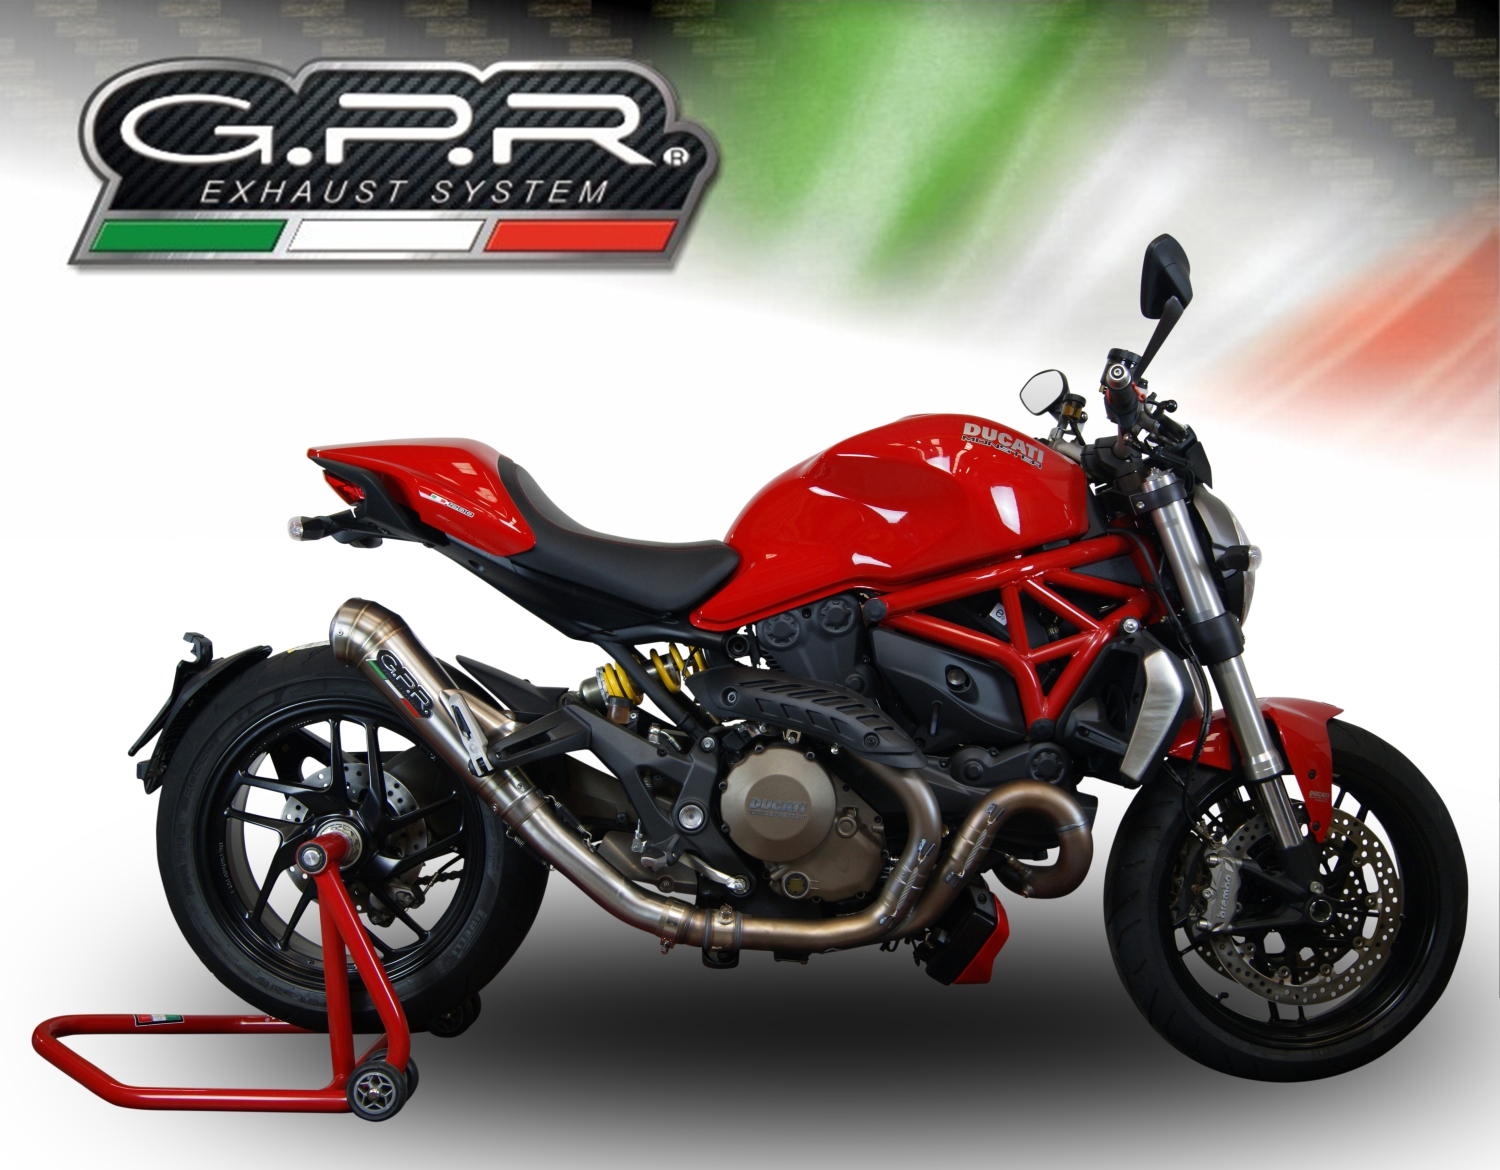 Scarico compatibile con Ducati Monster 1200 S -R 2014-2016, Powercone Evo, Scarico omologato, silenziatore con db killer estraibile e raccordo specifico